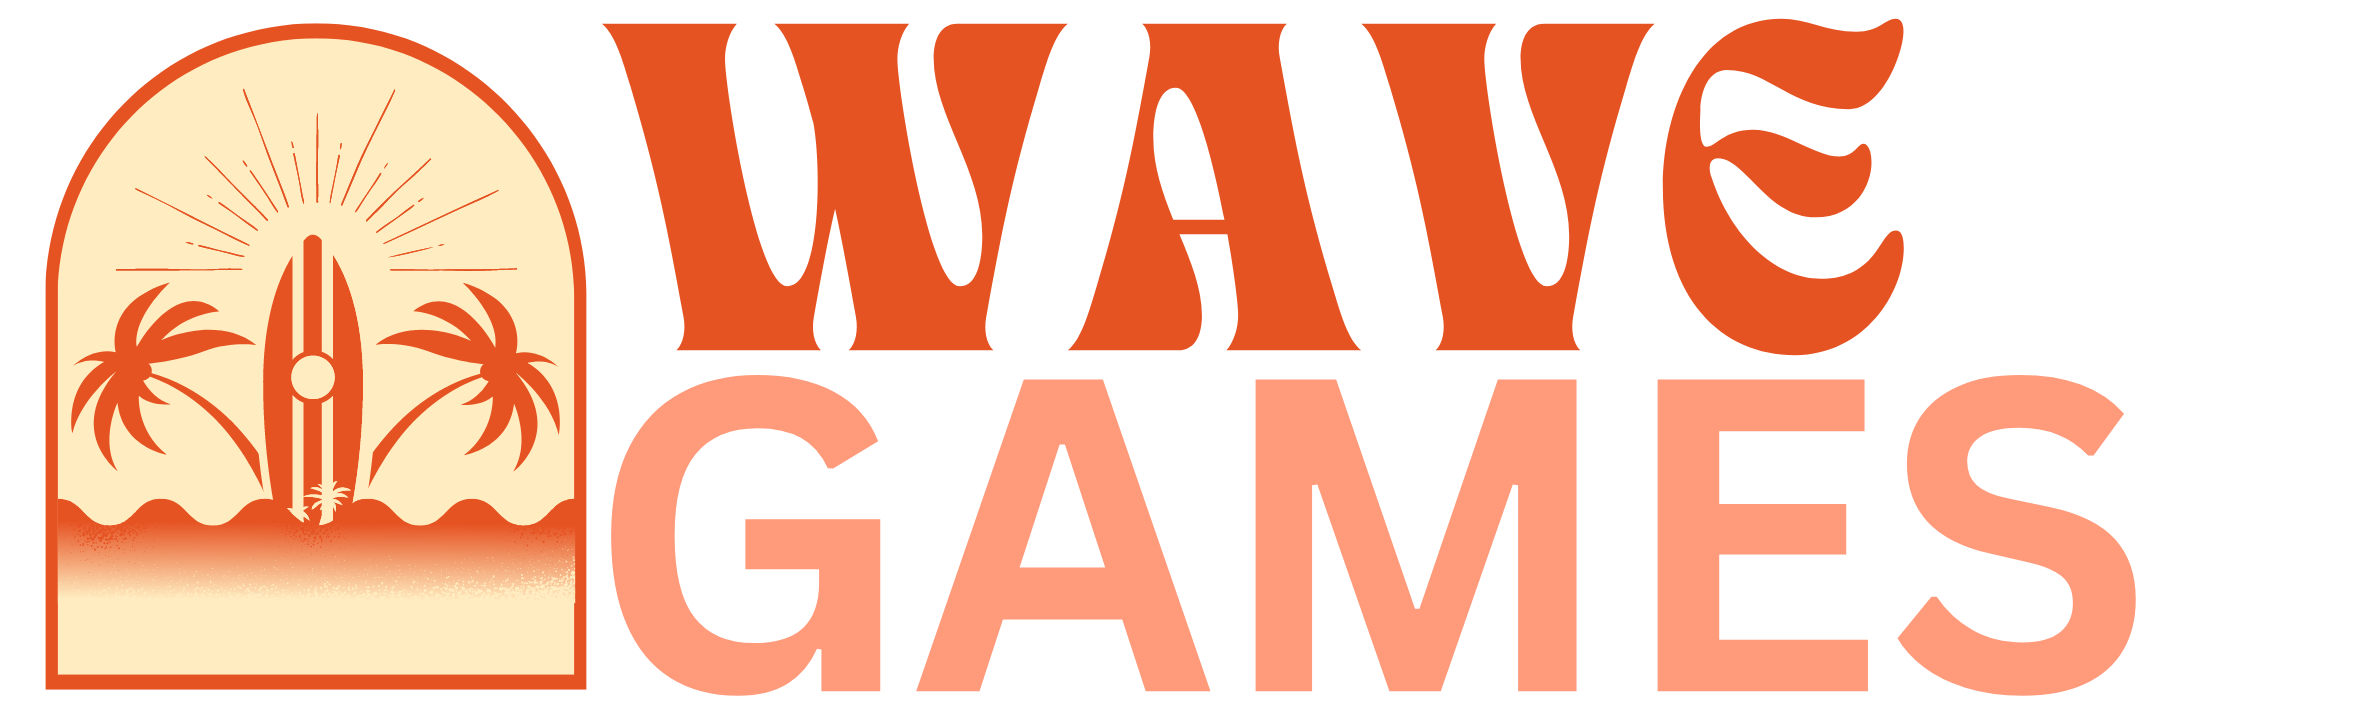 logo wave games 1